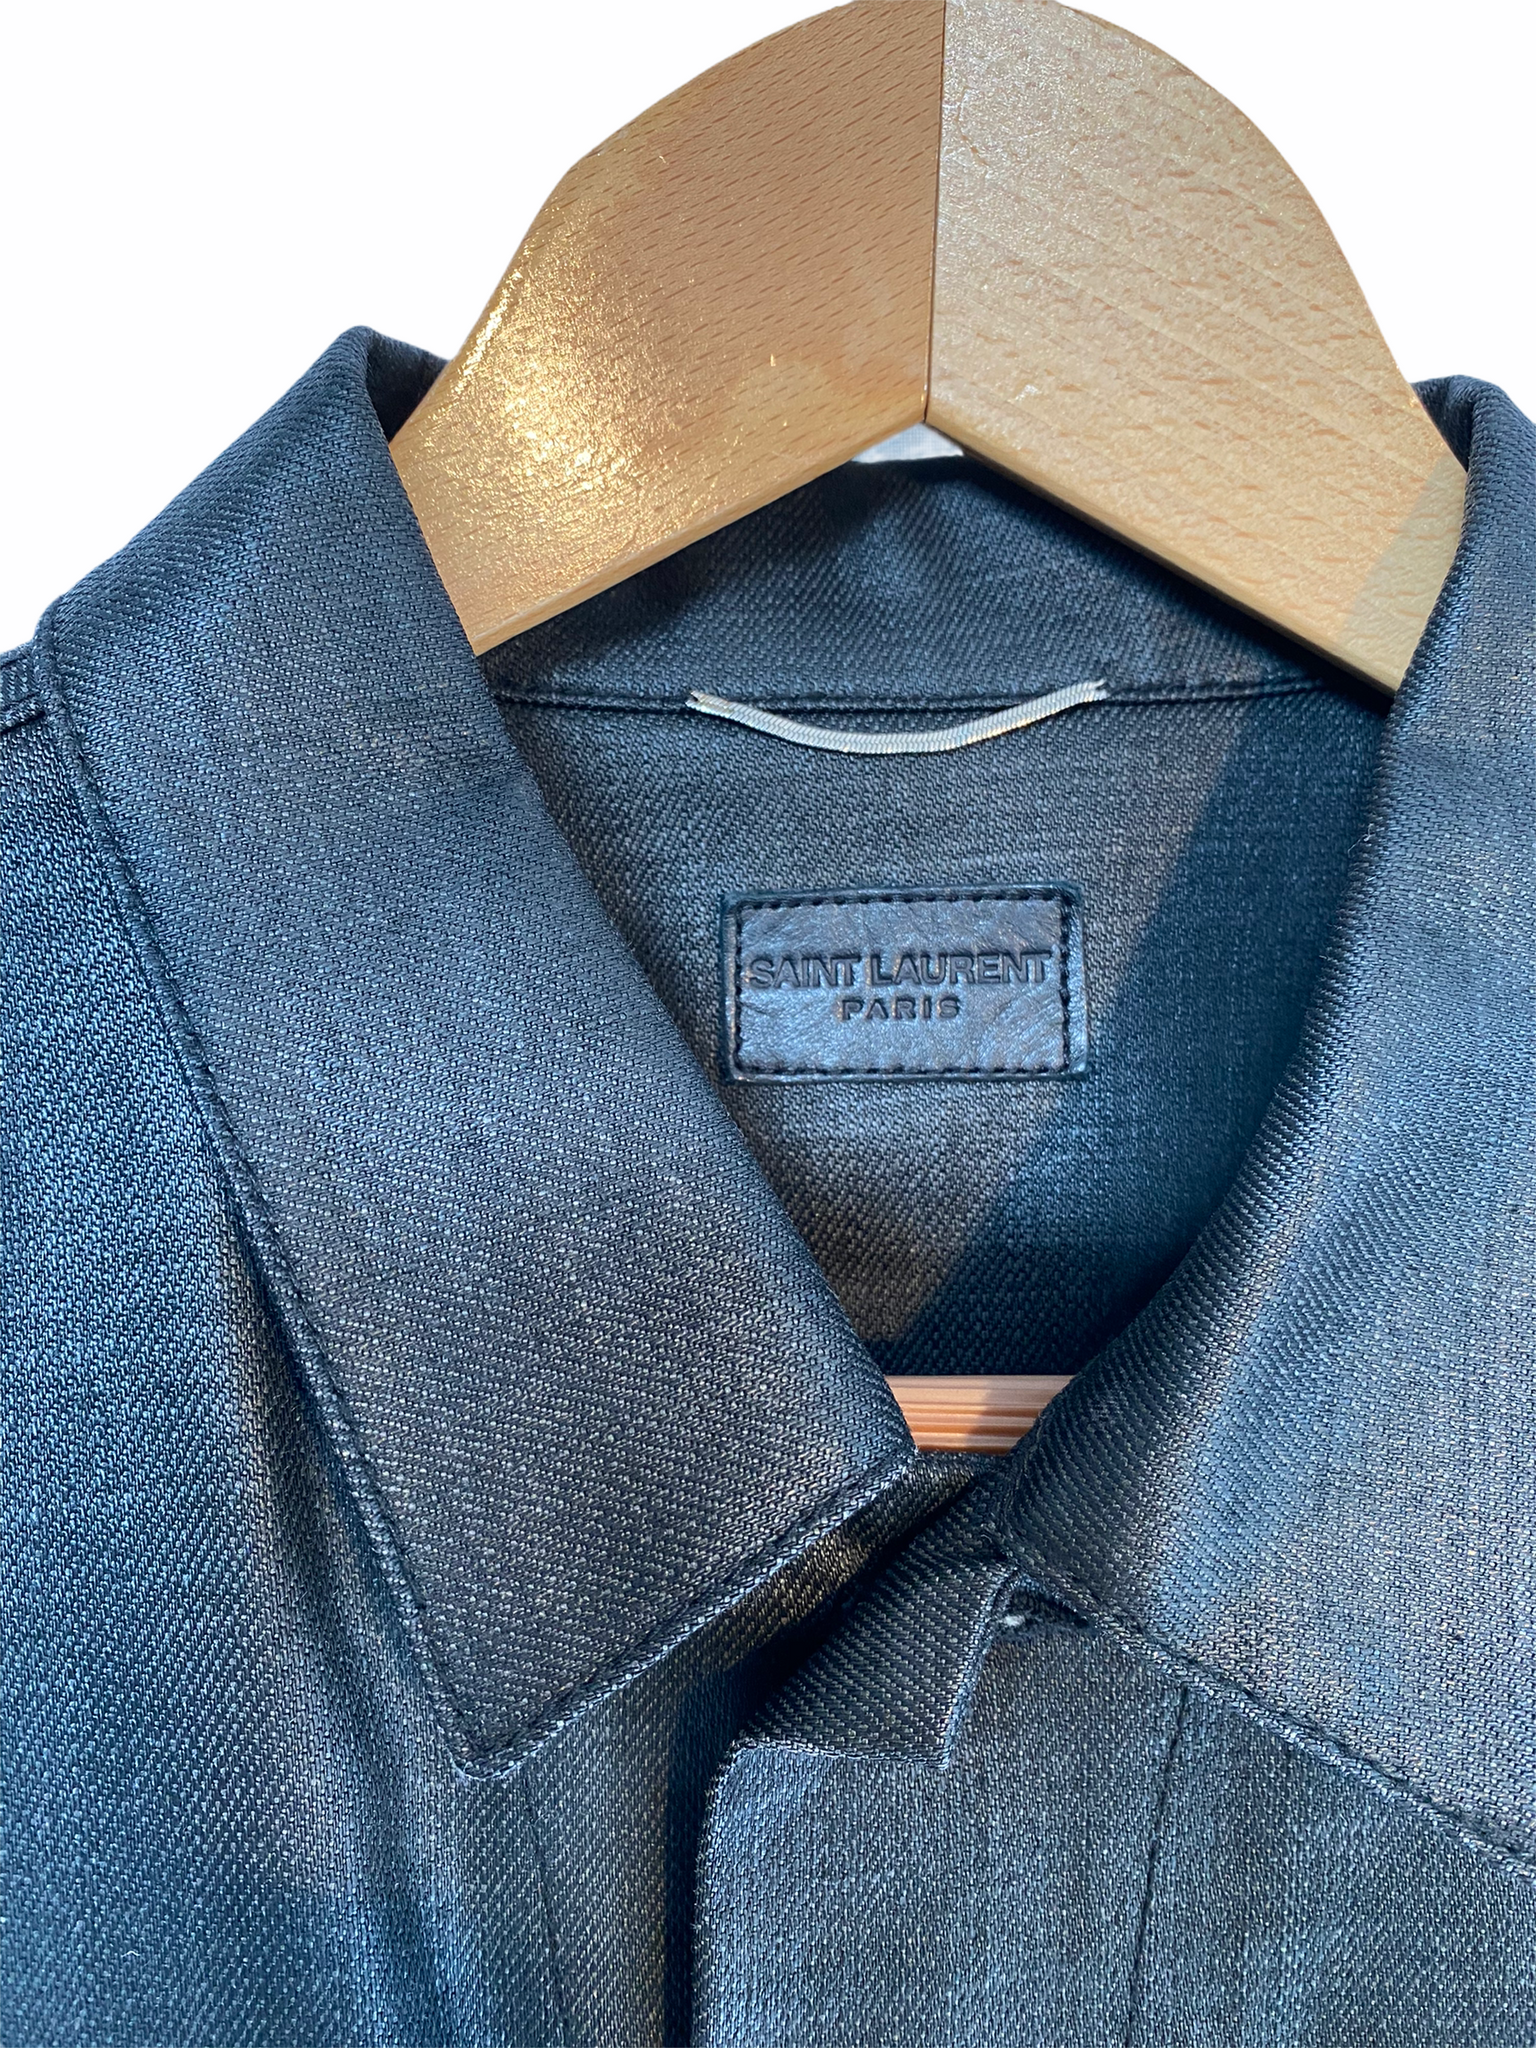 Jacket Saint Laurent Blue size M International in Denim - Jeans - 40249005